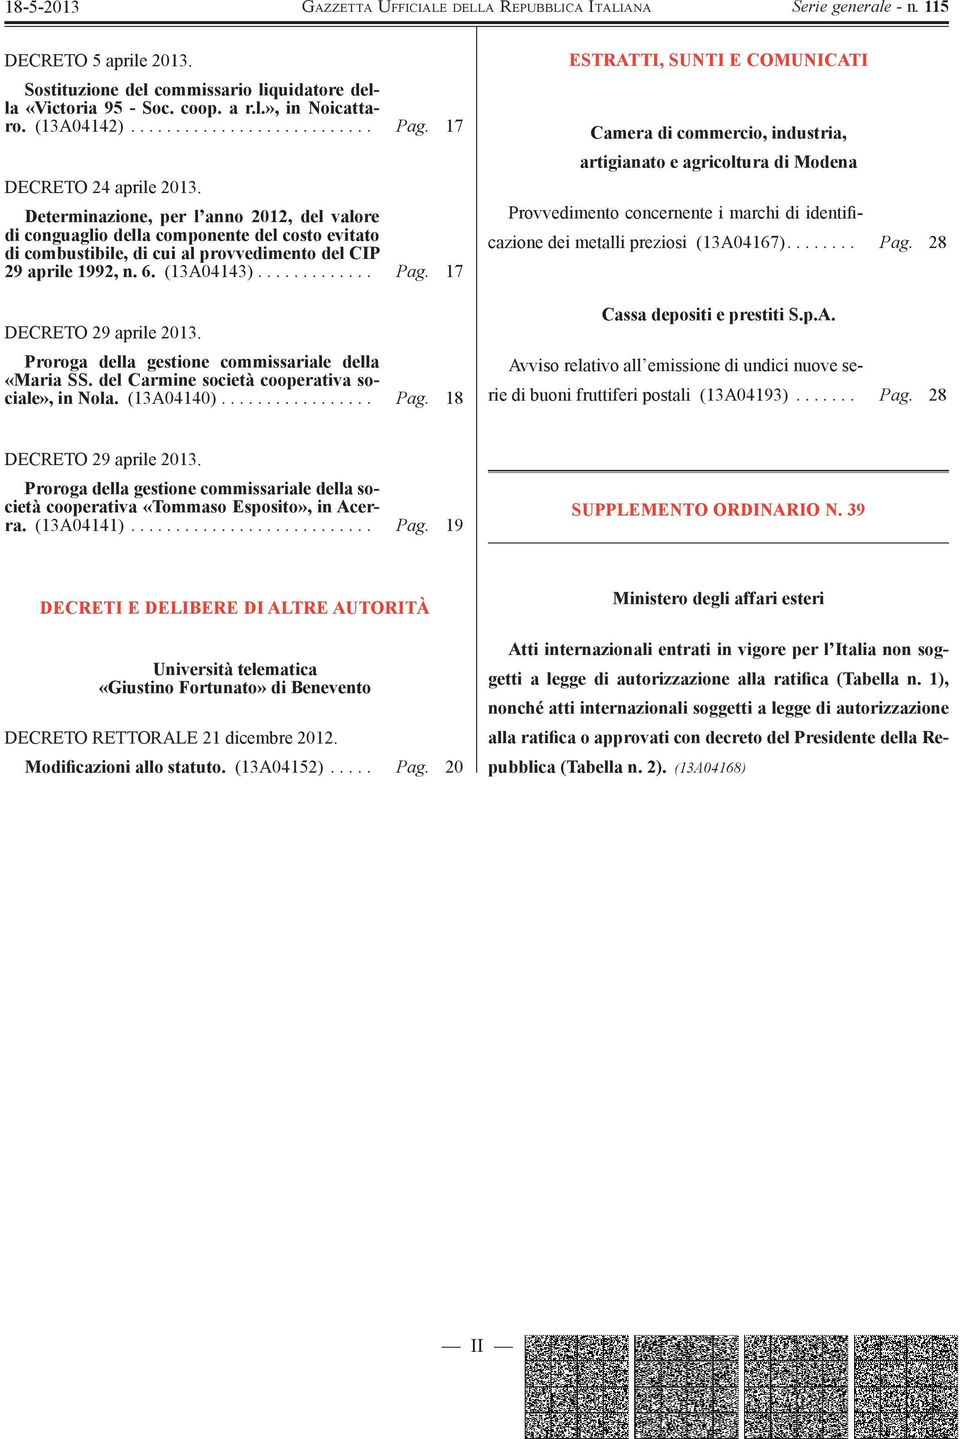 17 DECRETO 29 aprile 2013. Proroga della gestione commissariale della «Maria SS. del Carmine società cooperativa sociale», in Nola. (13A04140)................. Pag.